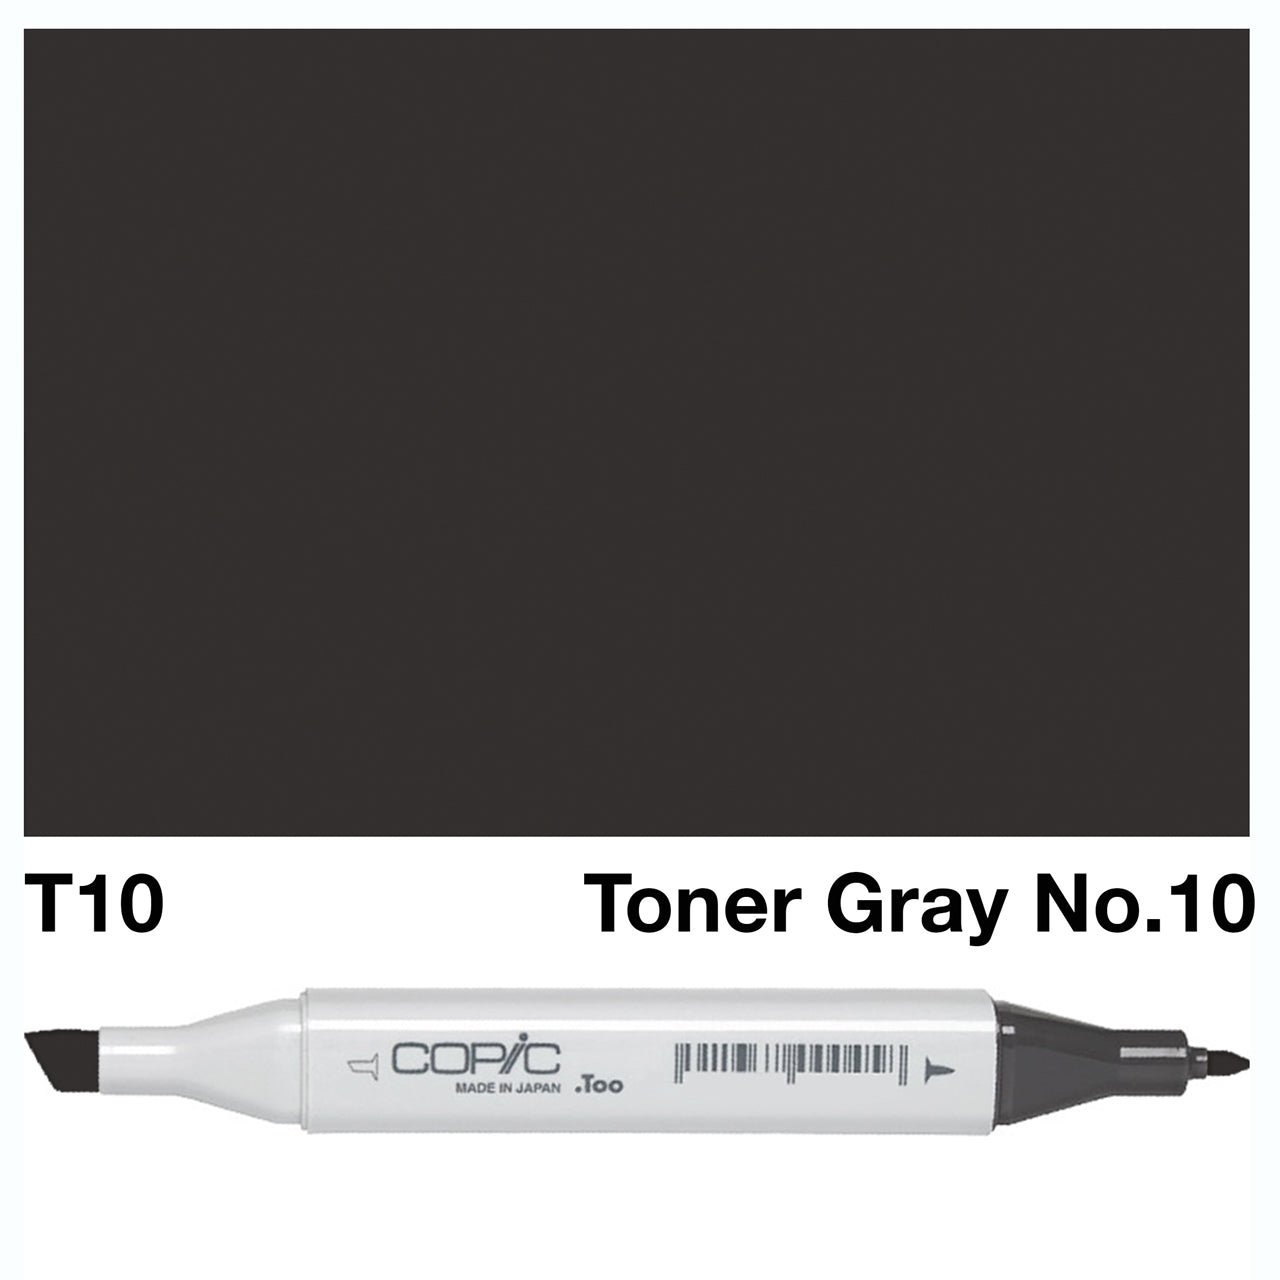 Copic Classic Marker T10 Toner Gray No.10 - theartshop.com.au